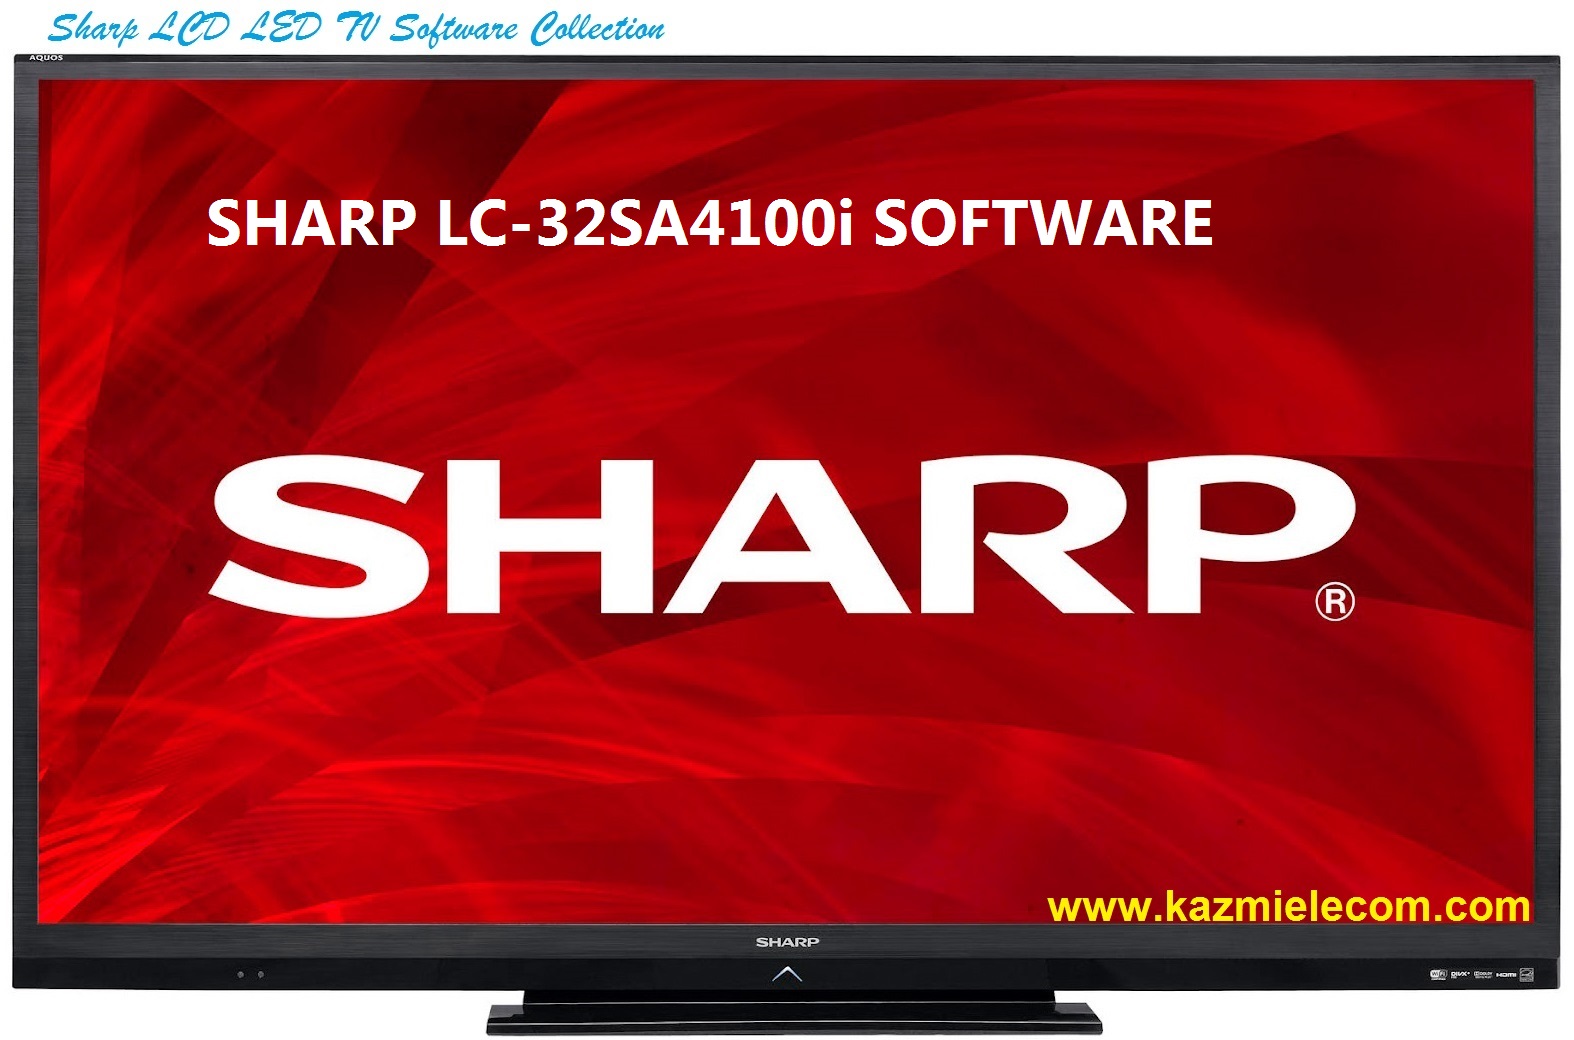 Sharp Lc-32Sa4100I